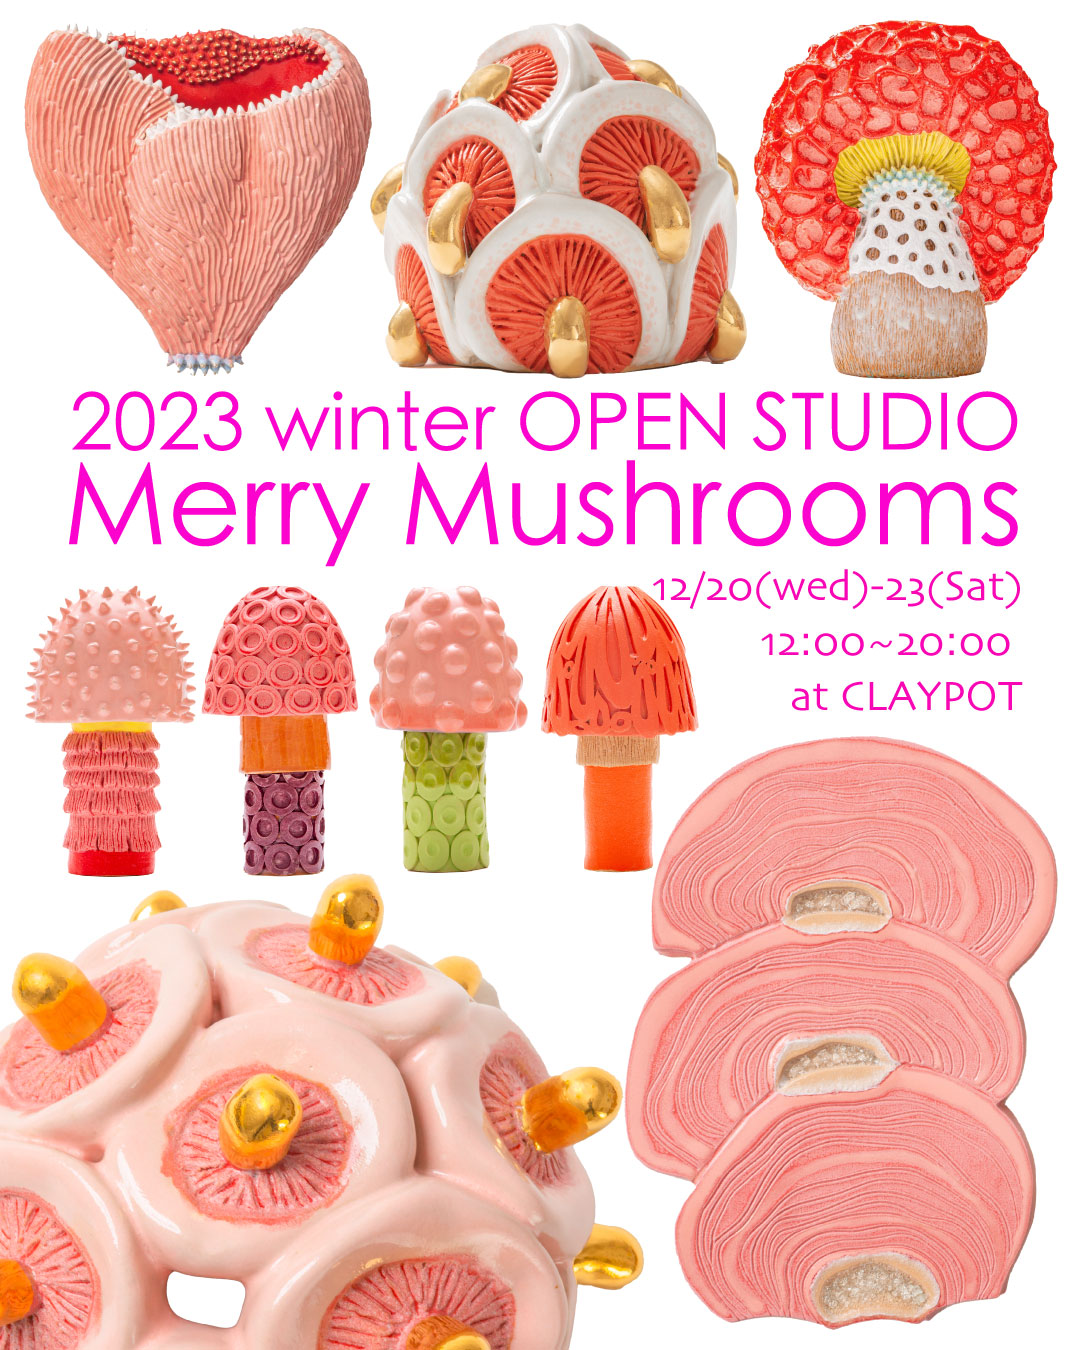 2023 Winter Open Studio Merry Mushrooms 12/20(wed)〜23(sat)